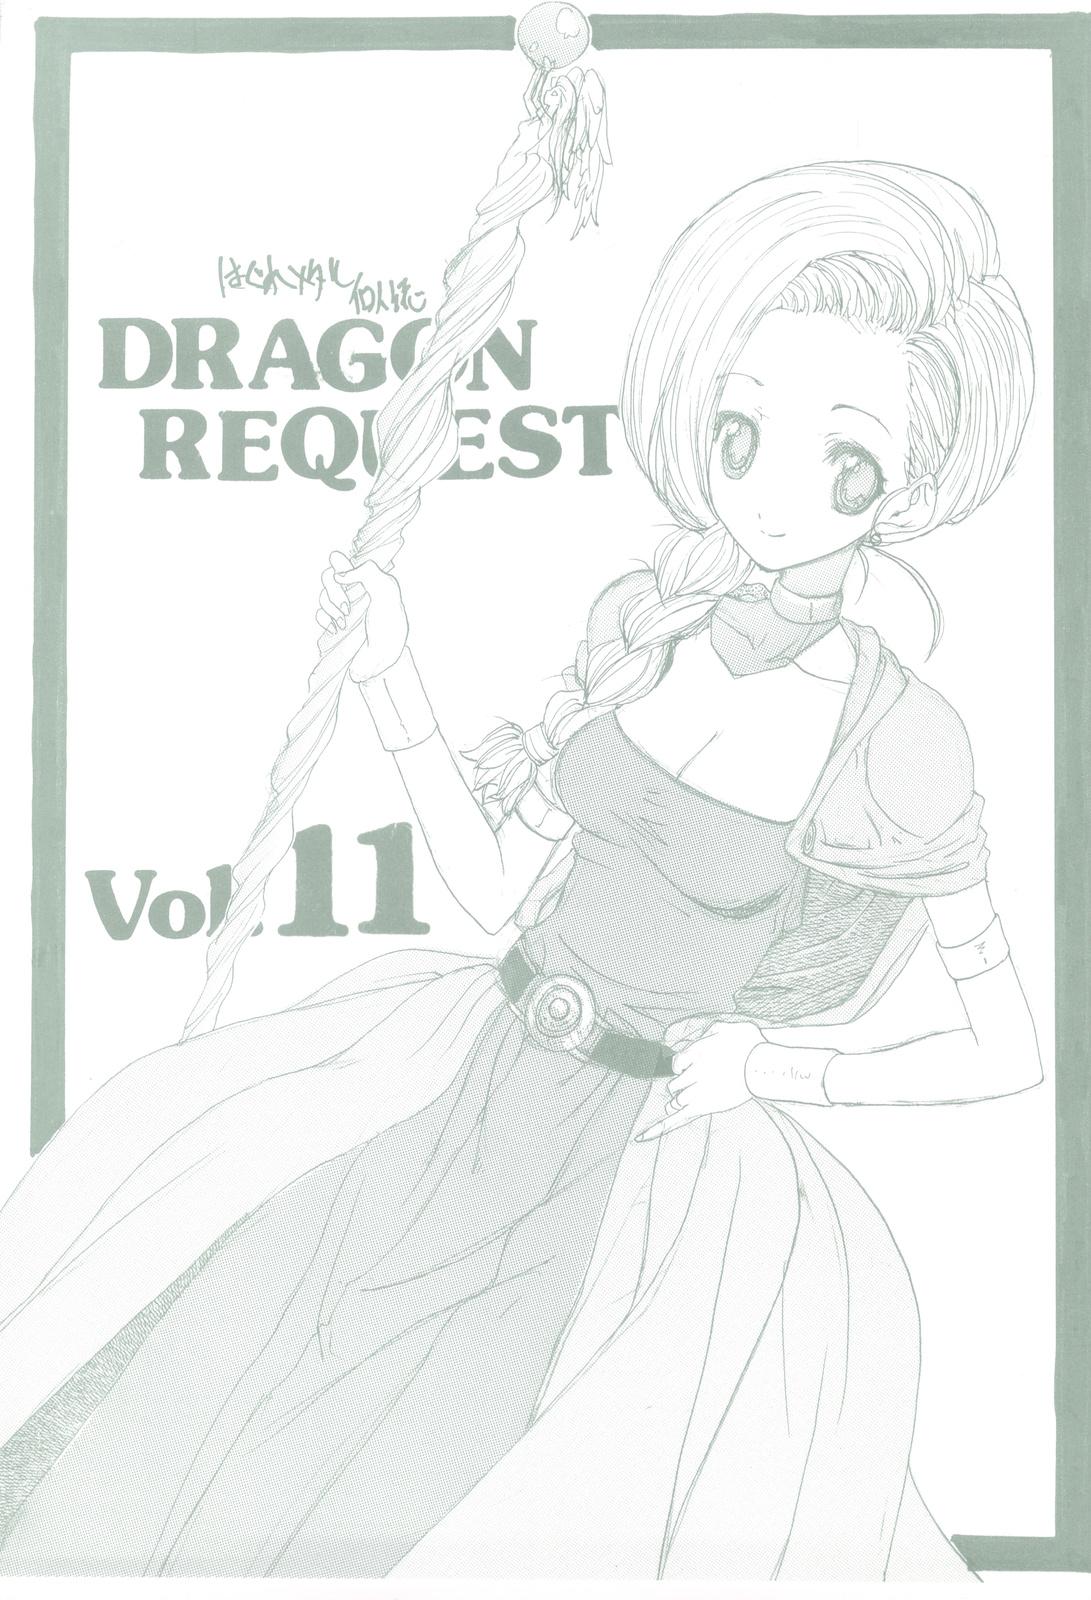 Fuck Com DRAGON REQUEST Vol. 11 - Dragon quest v Casada - Picture 1